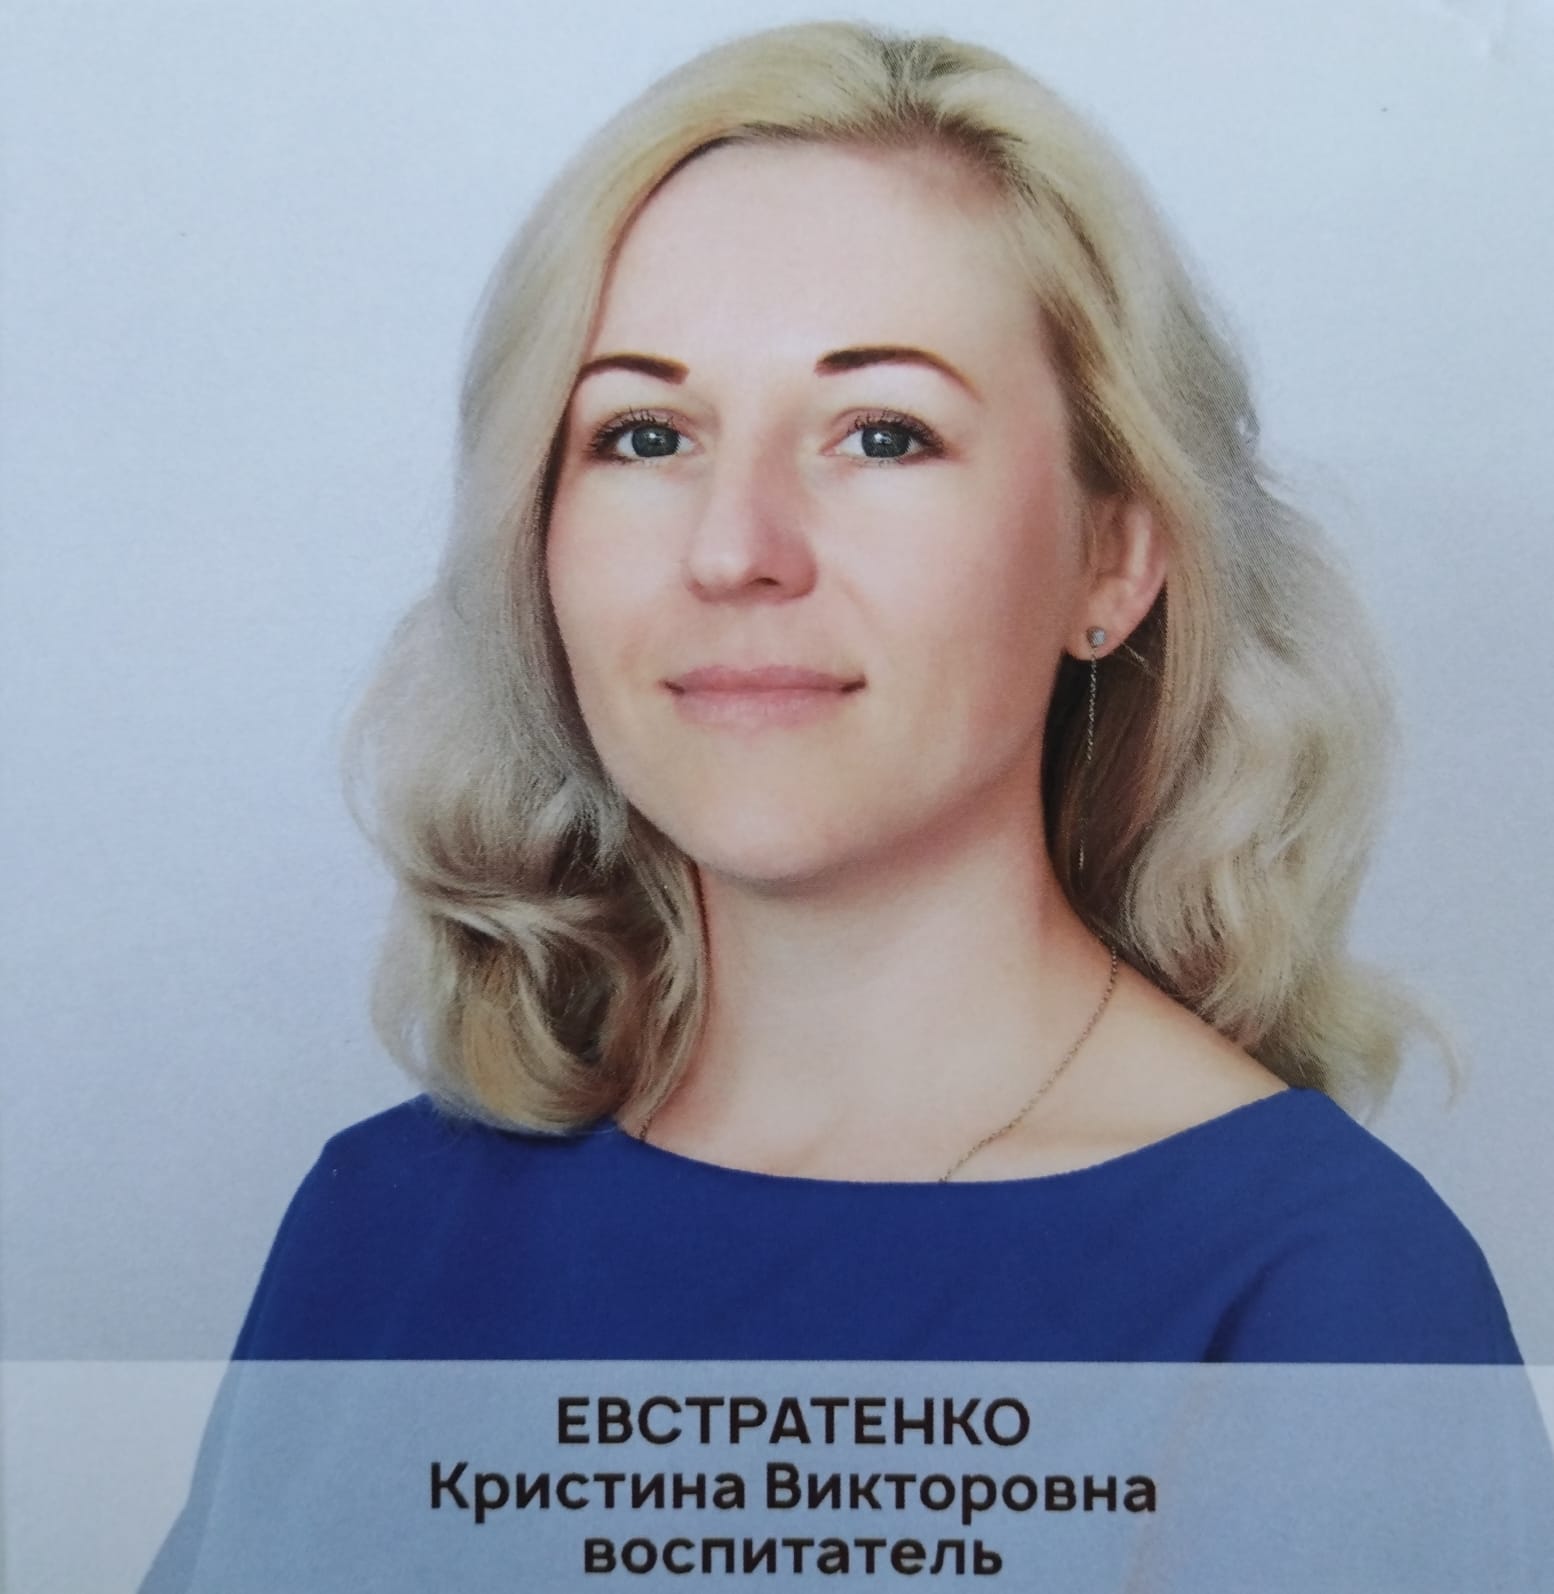 Воспитатель высшей категории Евстратенко Кристина Викторовна.